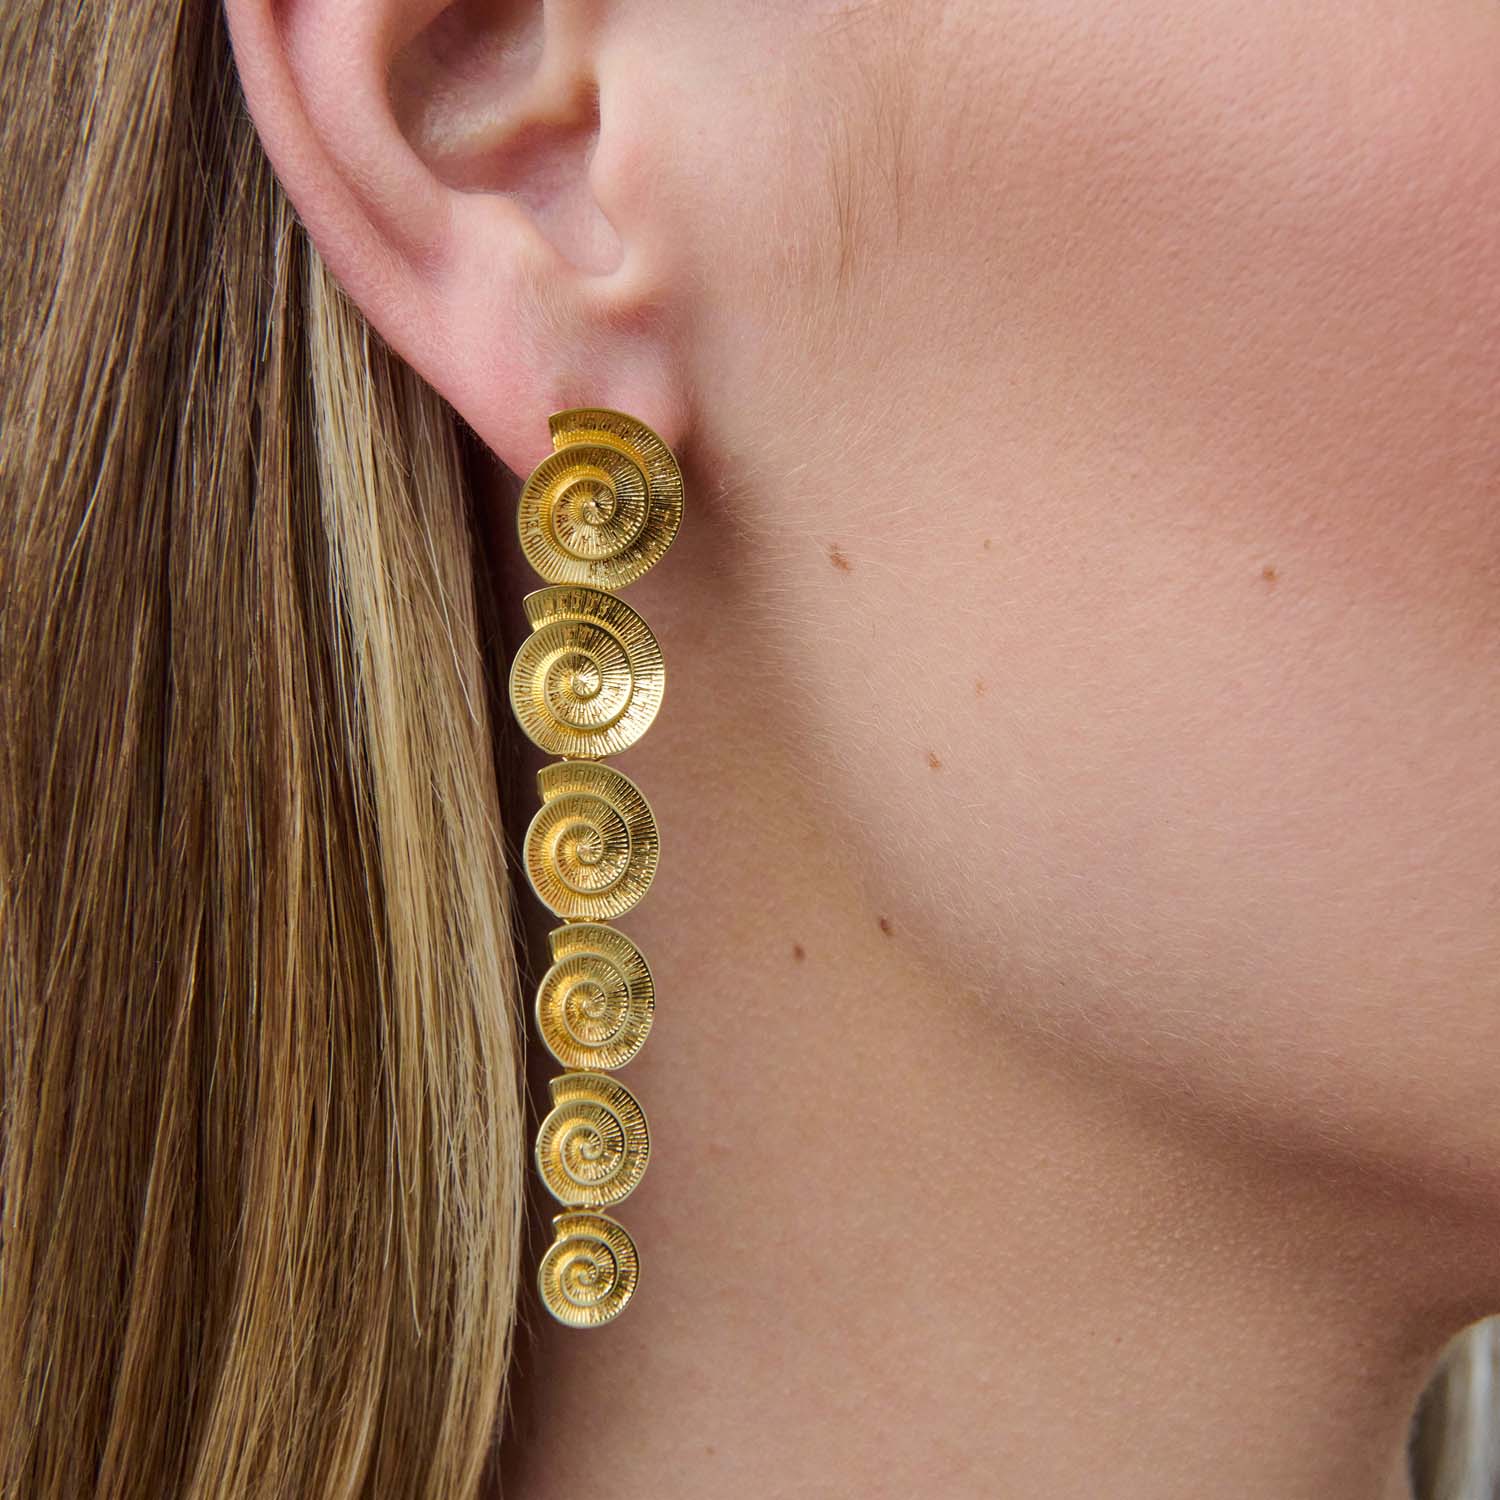 886 Royal Mint Earrings Tutamen Spiral Drop Earrings 9ct Yellow Gold